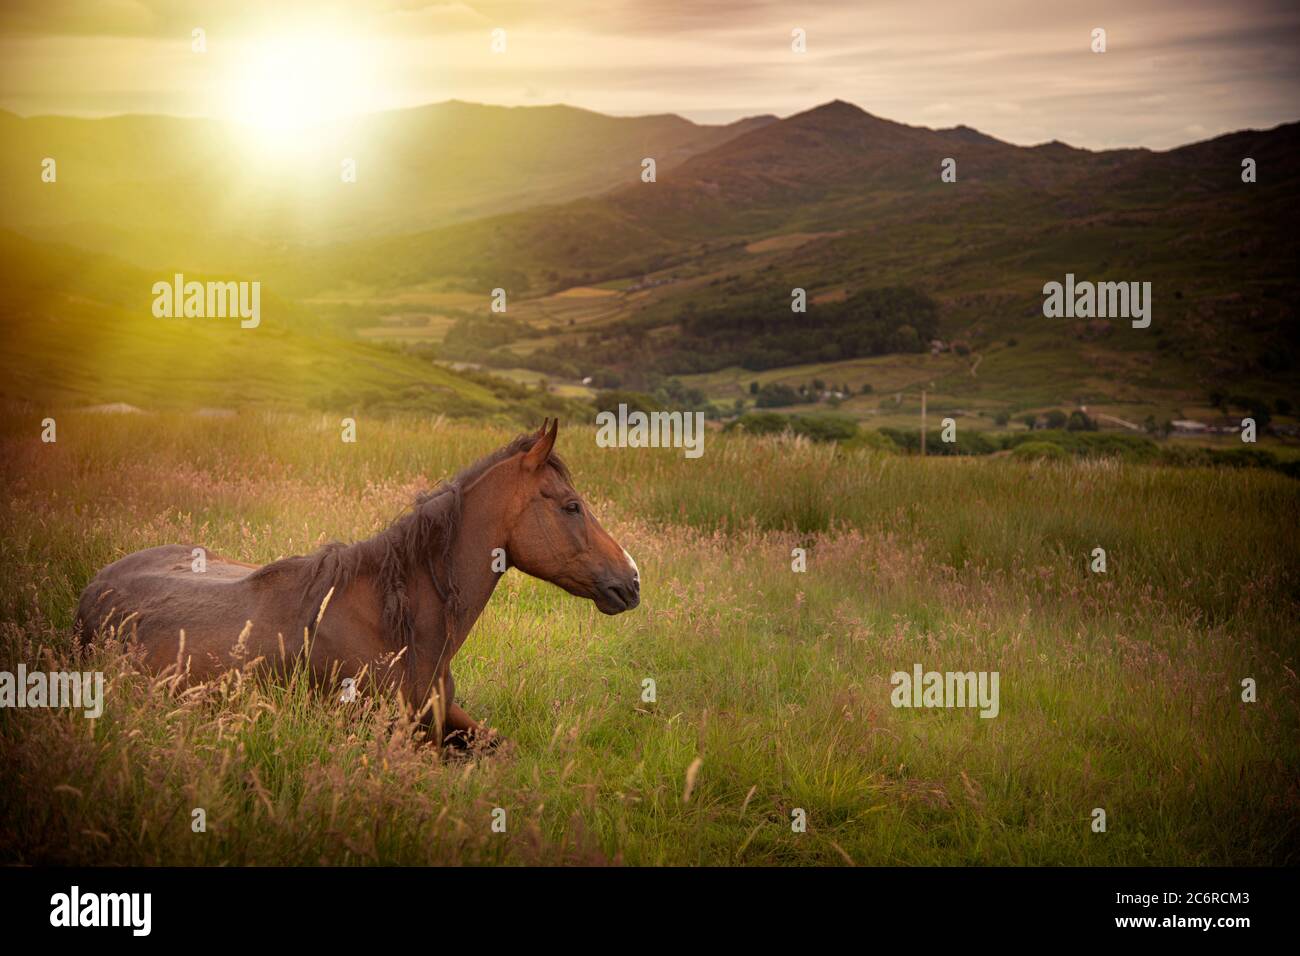 J'ai vu ce cheval se détendre dans le champ, comme il avait l'air de contempler le monde autour de lui. Banque D'Images